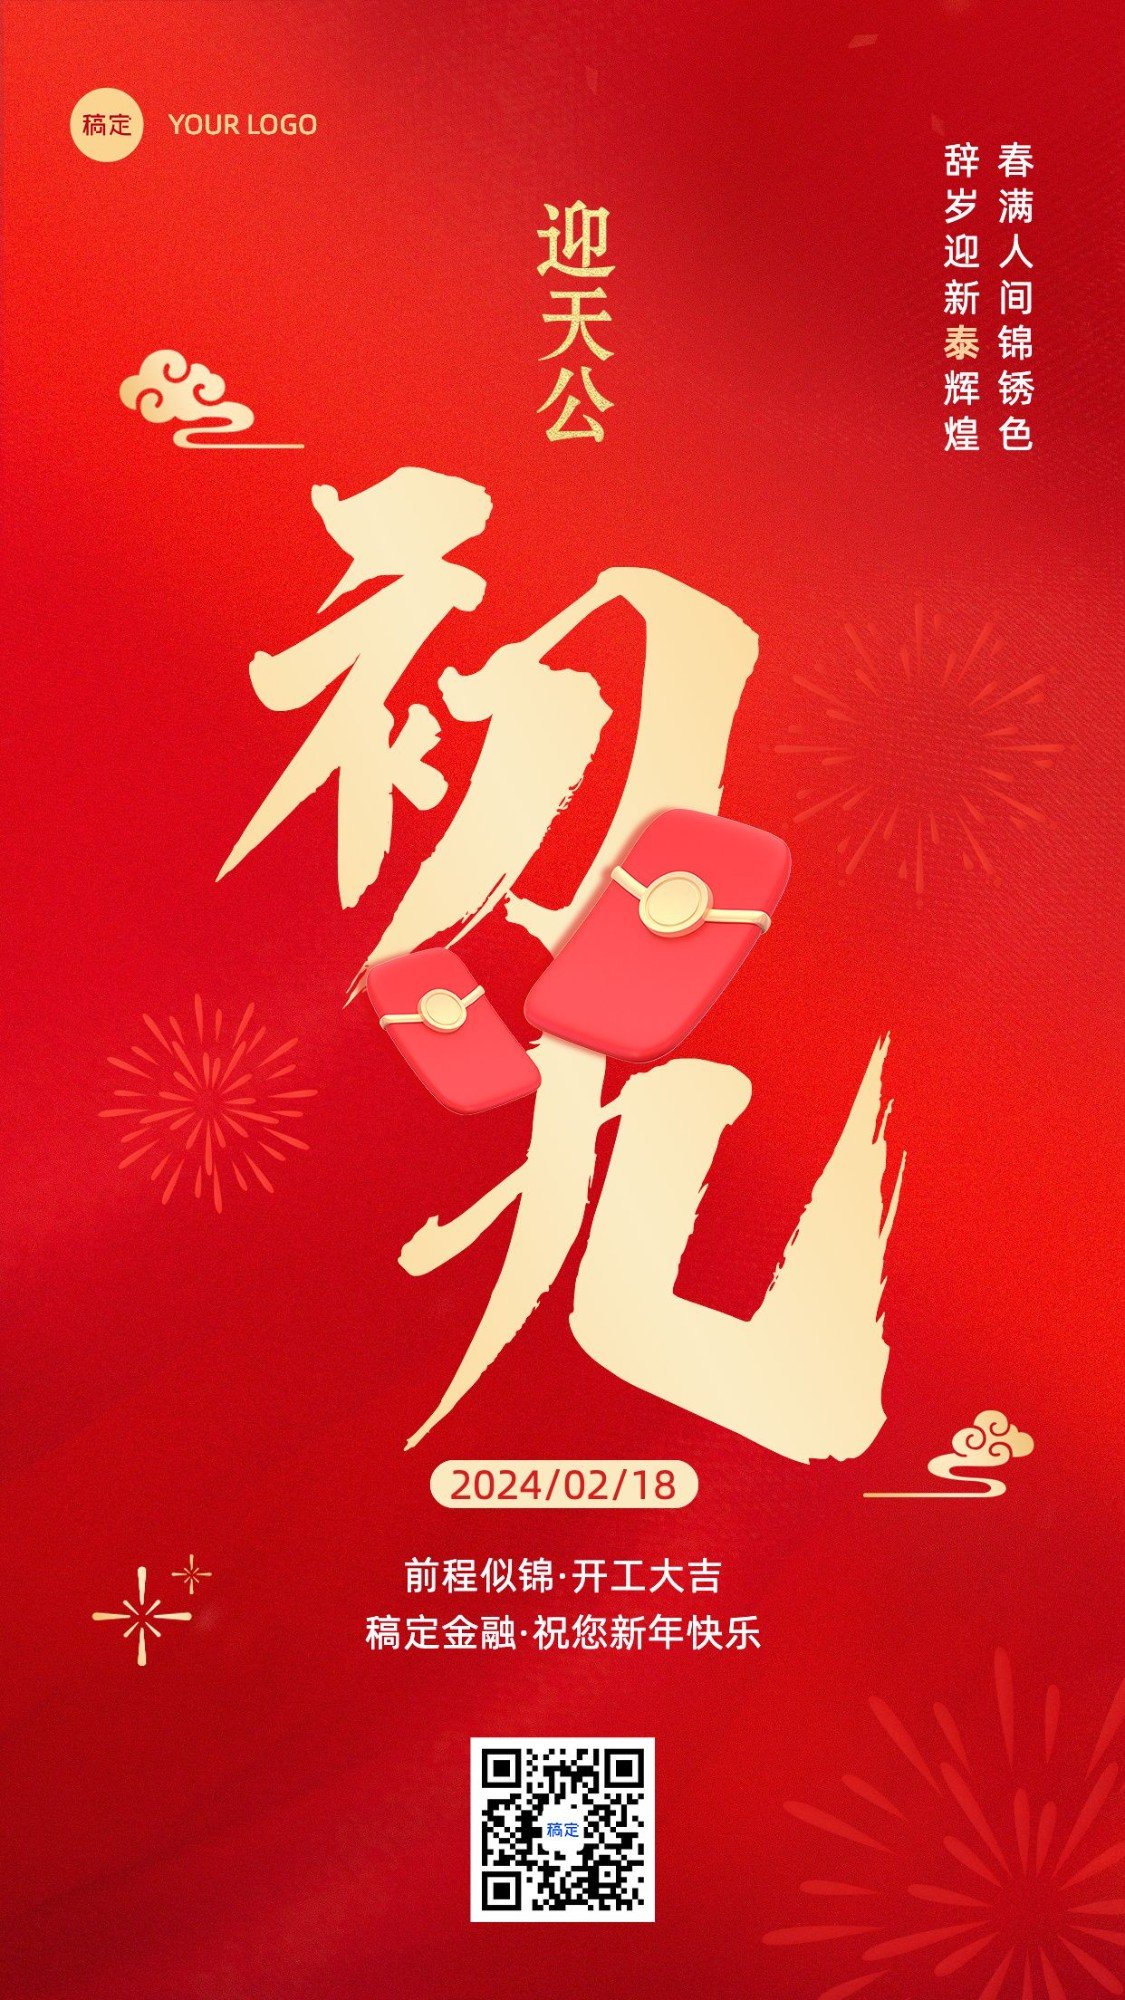 春节正月初九金融保险节日祝福喜庆大字手机海报套系预览效果